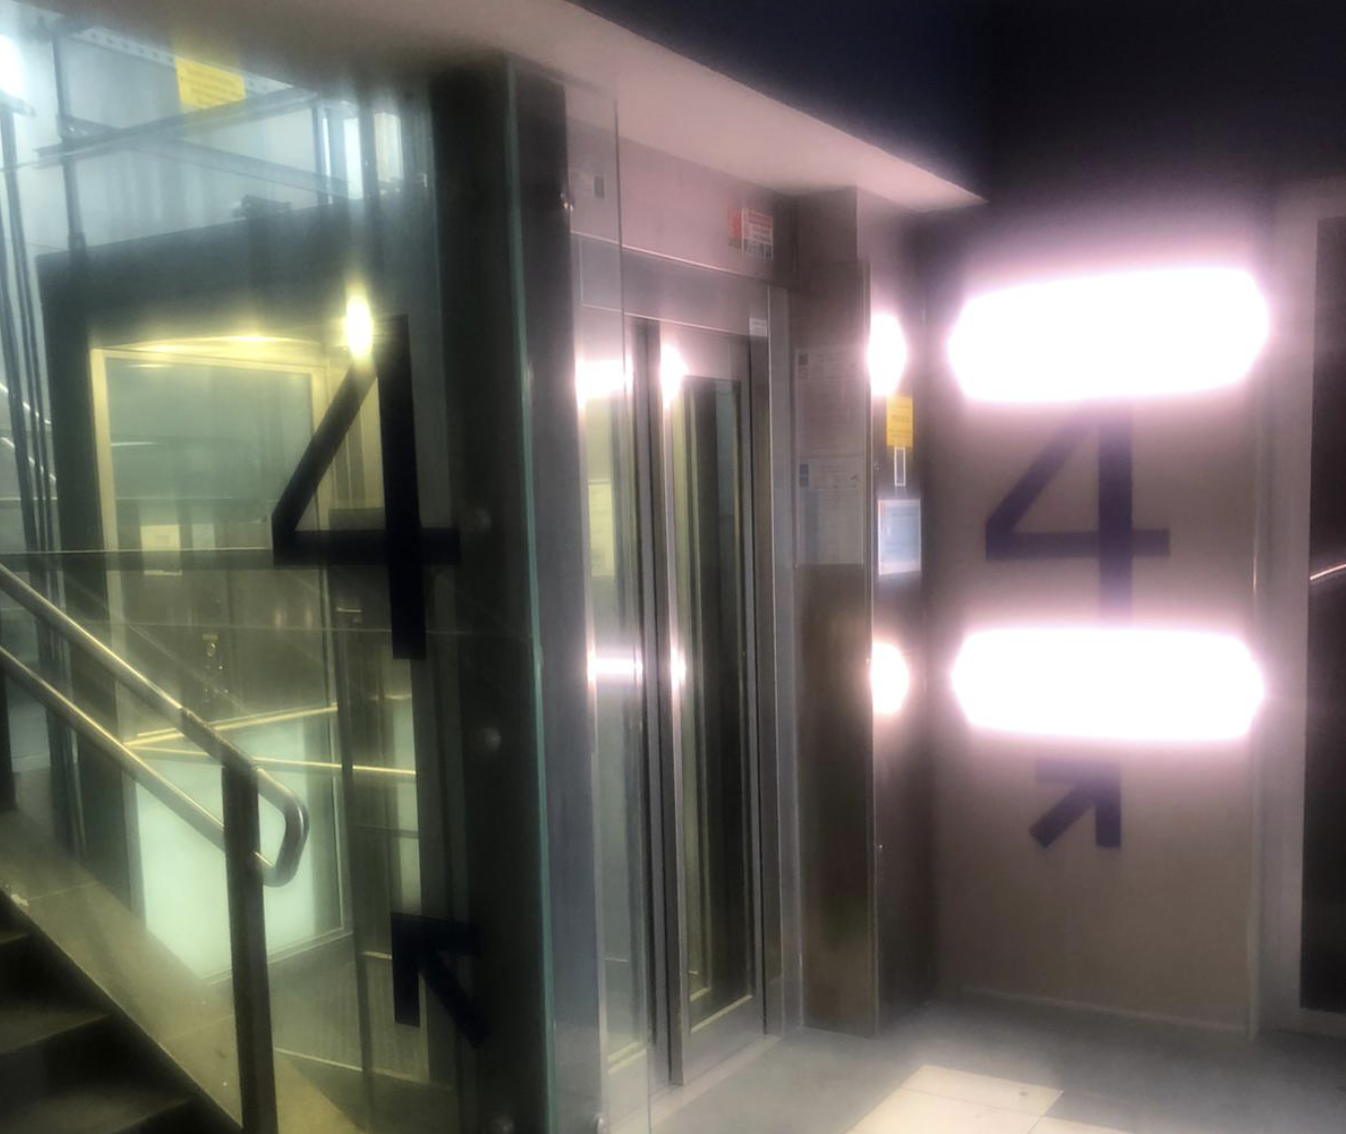 "Alla stazione di Ovada non funzionano gli ascensori". La segnalazione dei pendolari